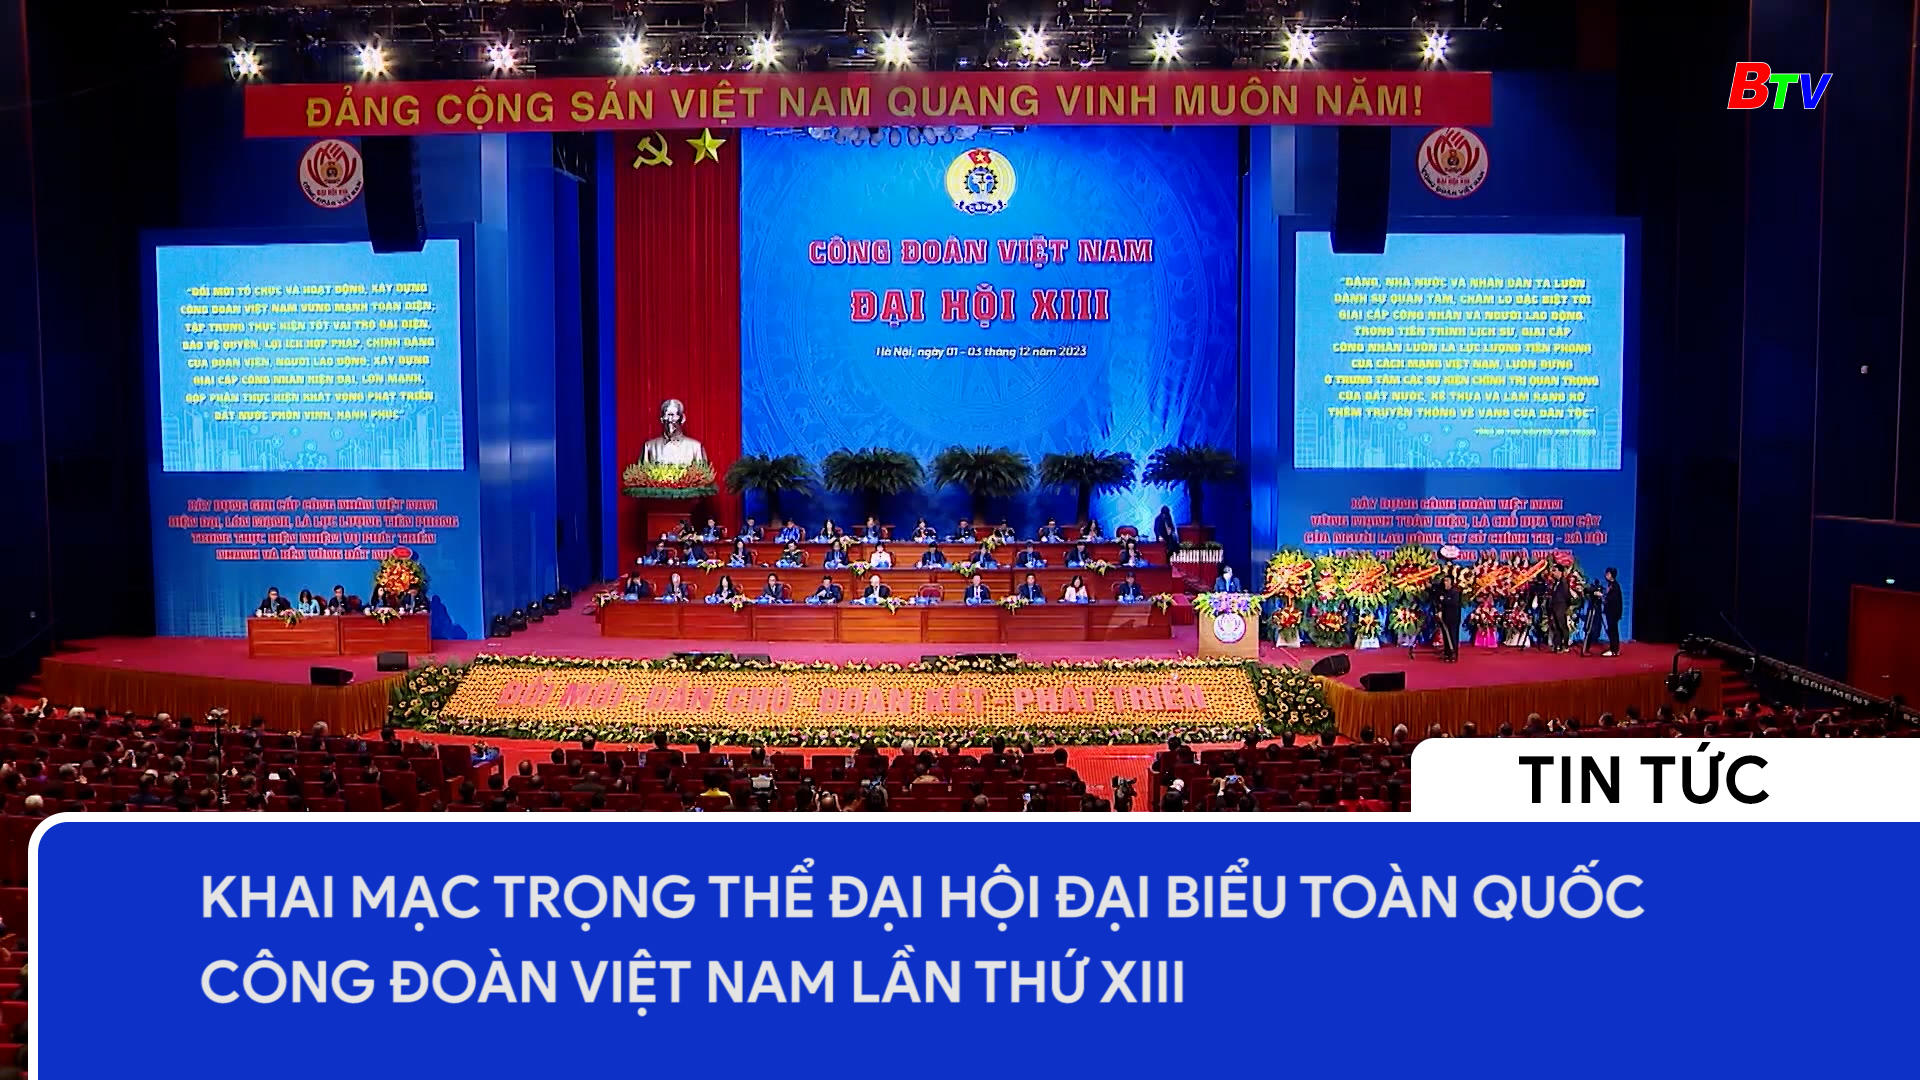 Công đoàn Việt Nam khai mạc trọng thể Đại hội đại biểu toàn quốc lần thứ XIII